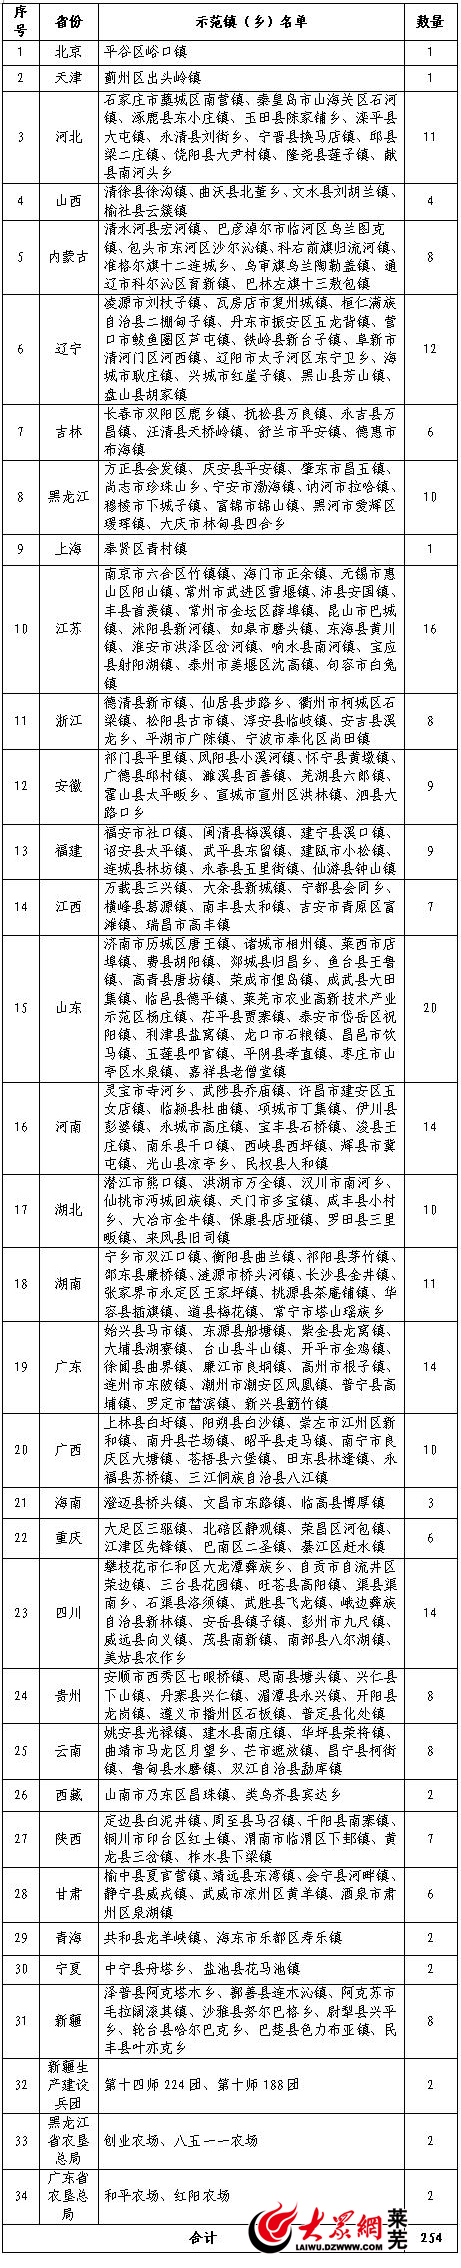 农高区杨庄镇入选农业产业强镇示范建设名单